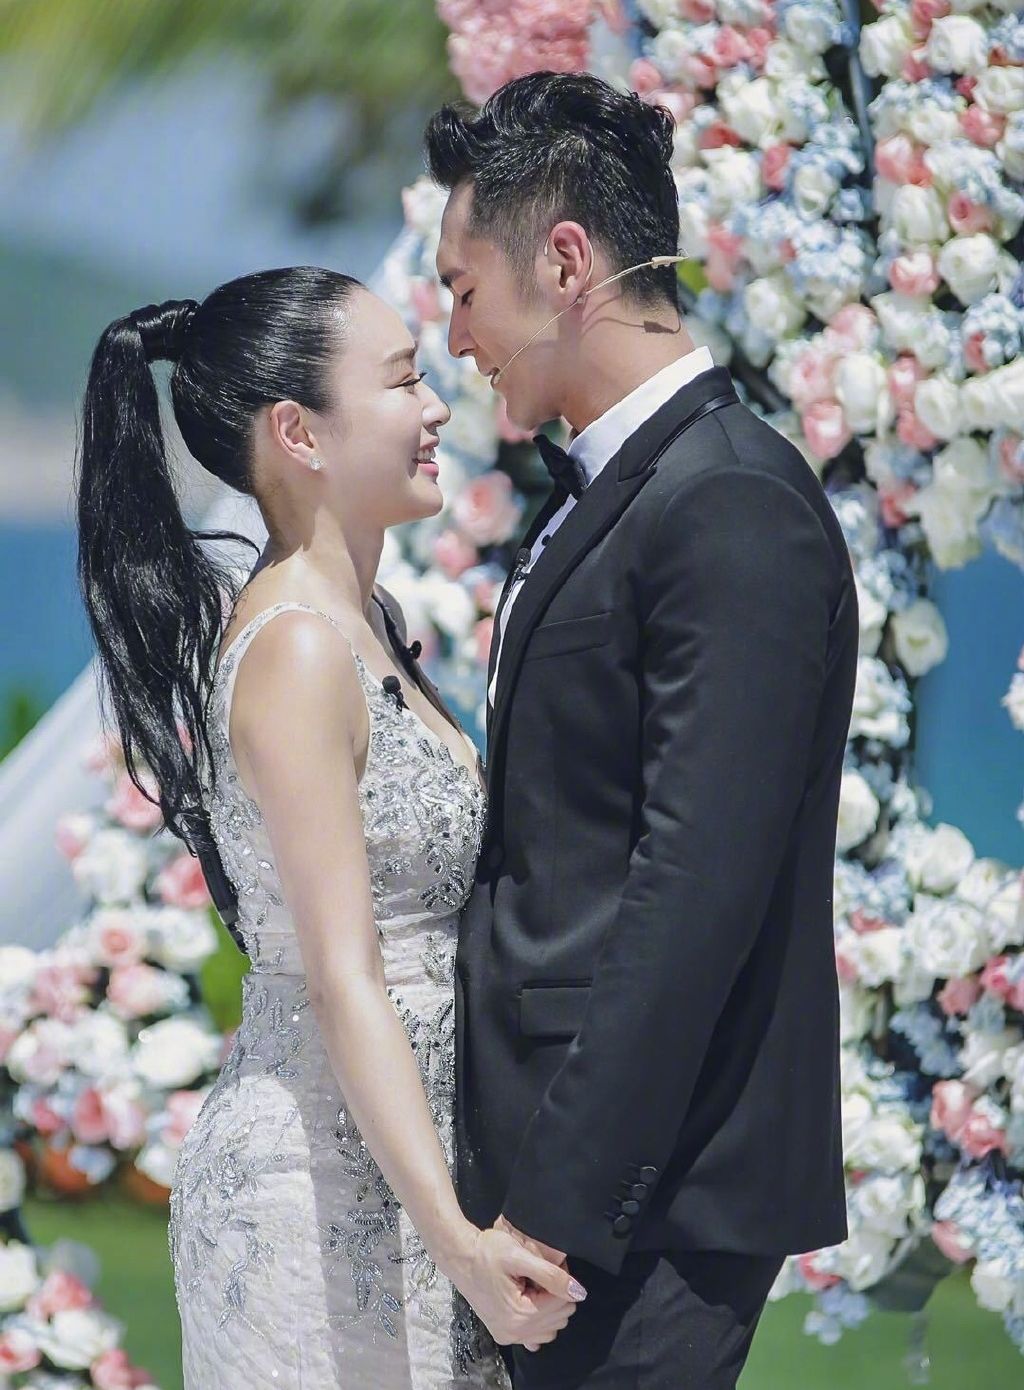 锺丽缇2016年与张伦硕再婚，并将三名女儿改姓张。